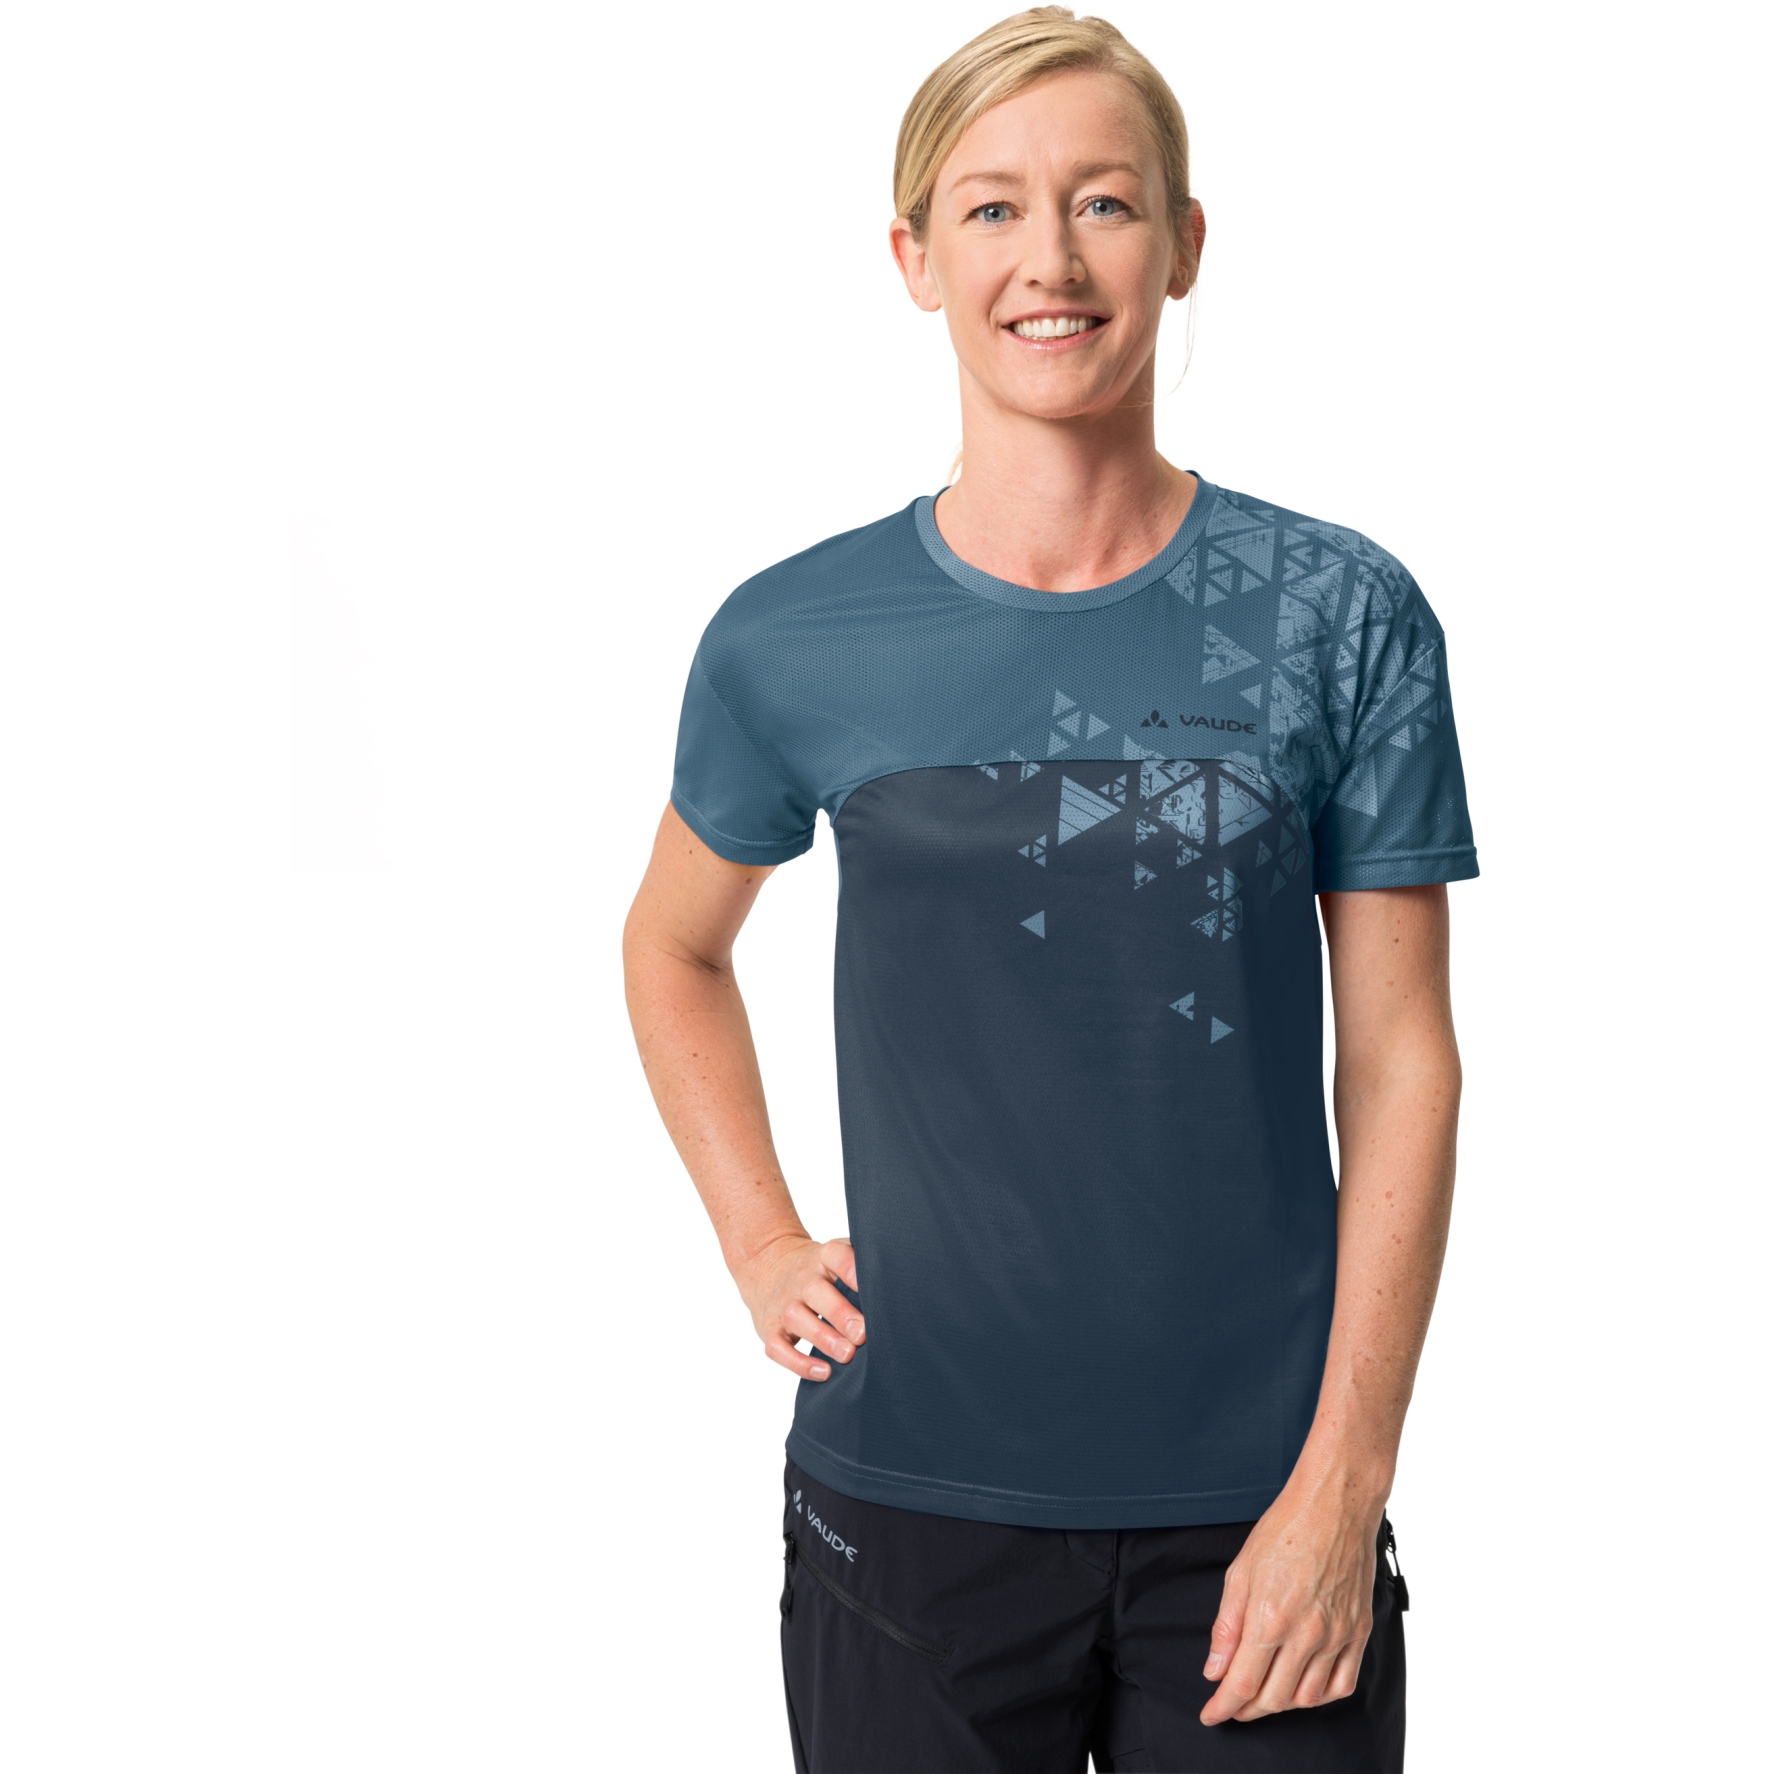 Produktbild von Vaude Moab VI T-Shirt Damen - blue grey